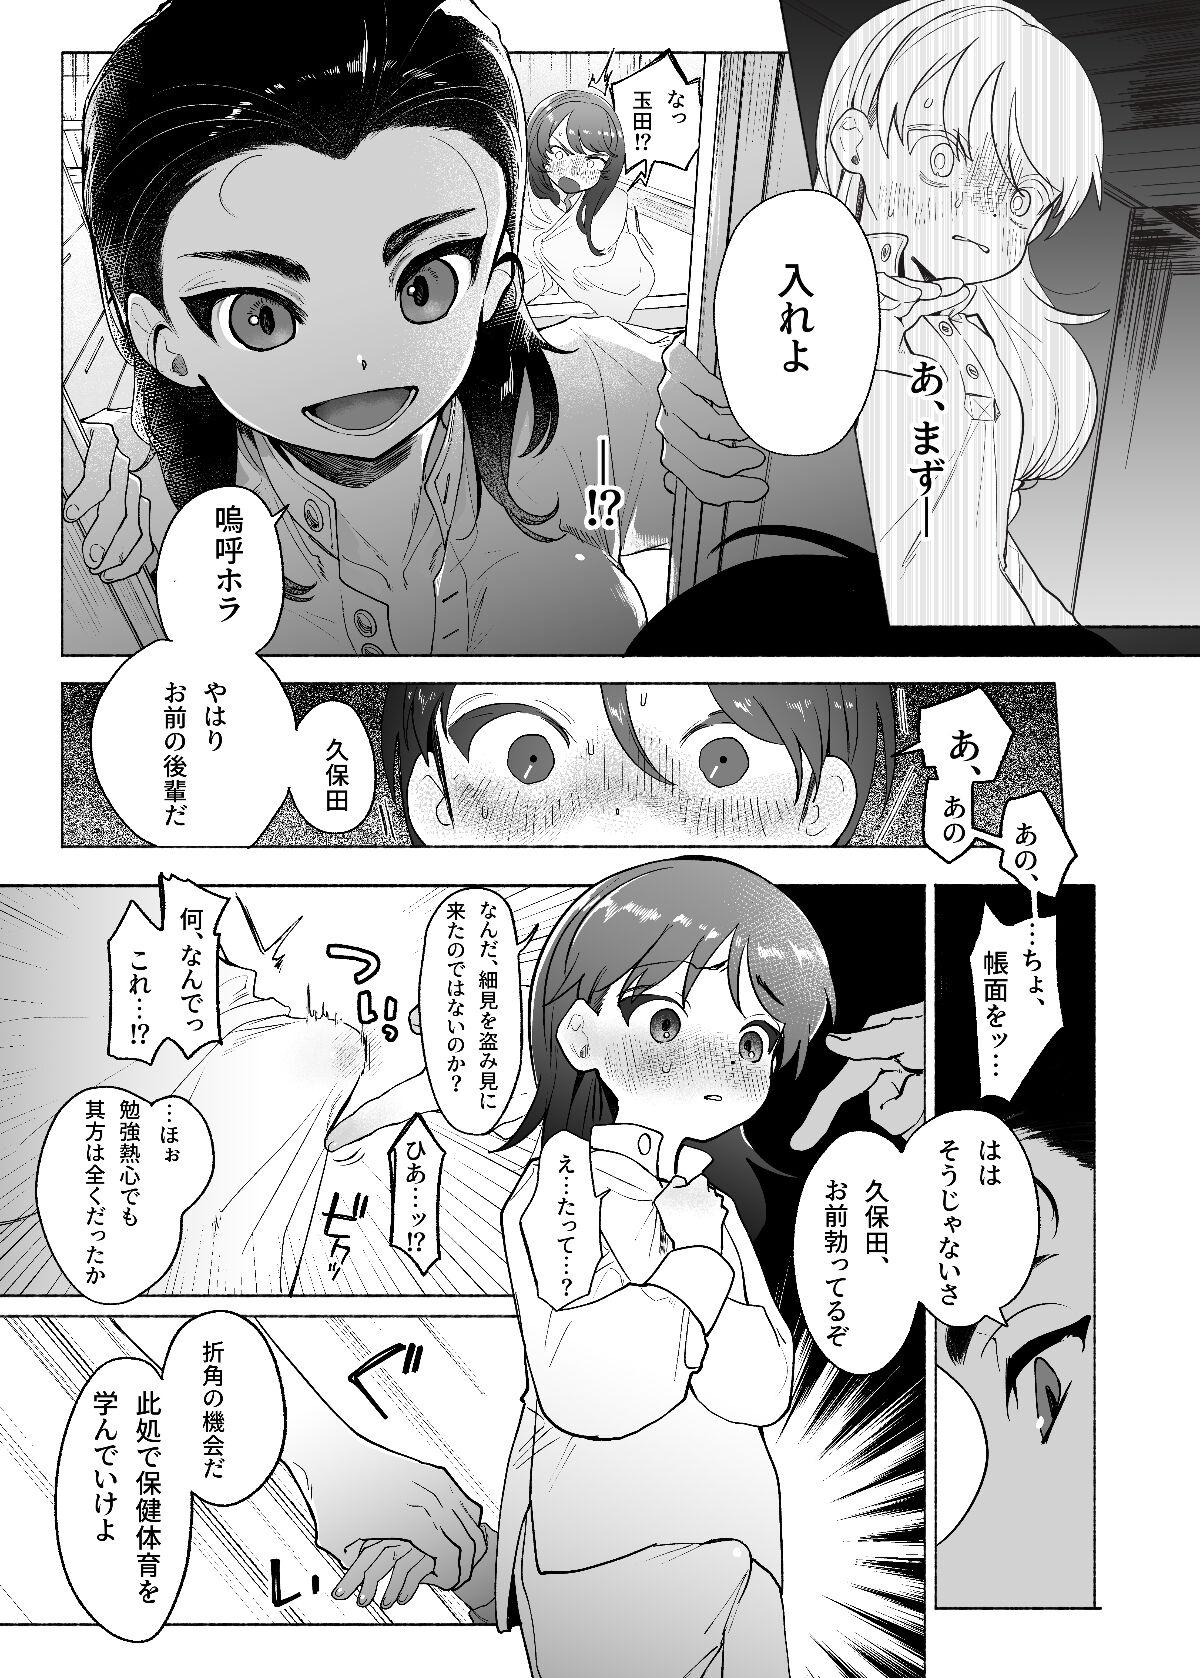 Blowjob Ah, Watashi no Senpai Dono - Girls und panzer Str8 - Page 8